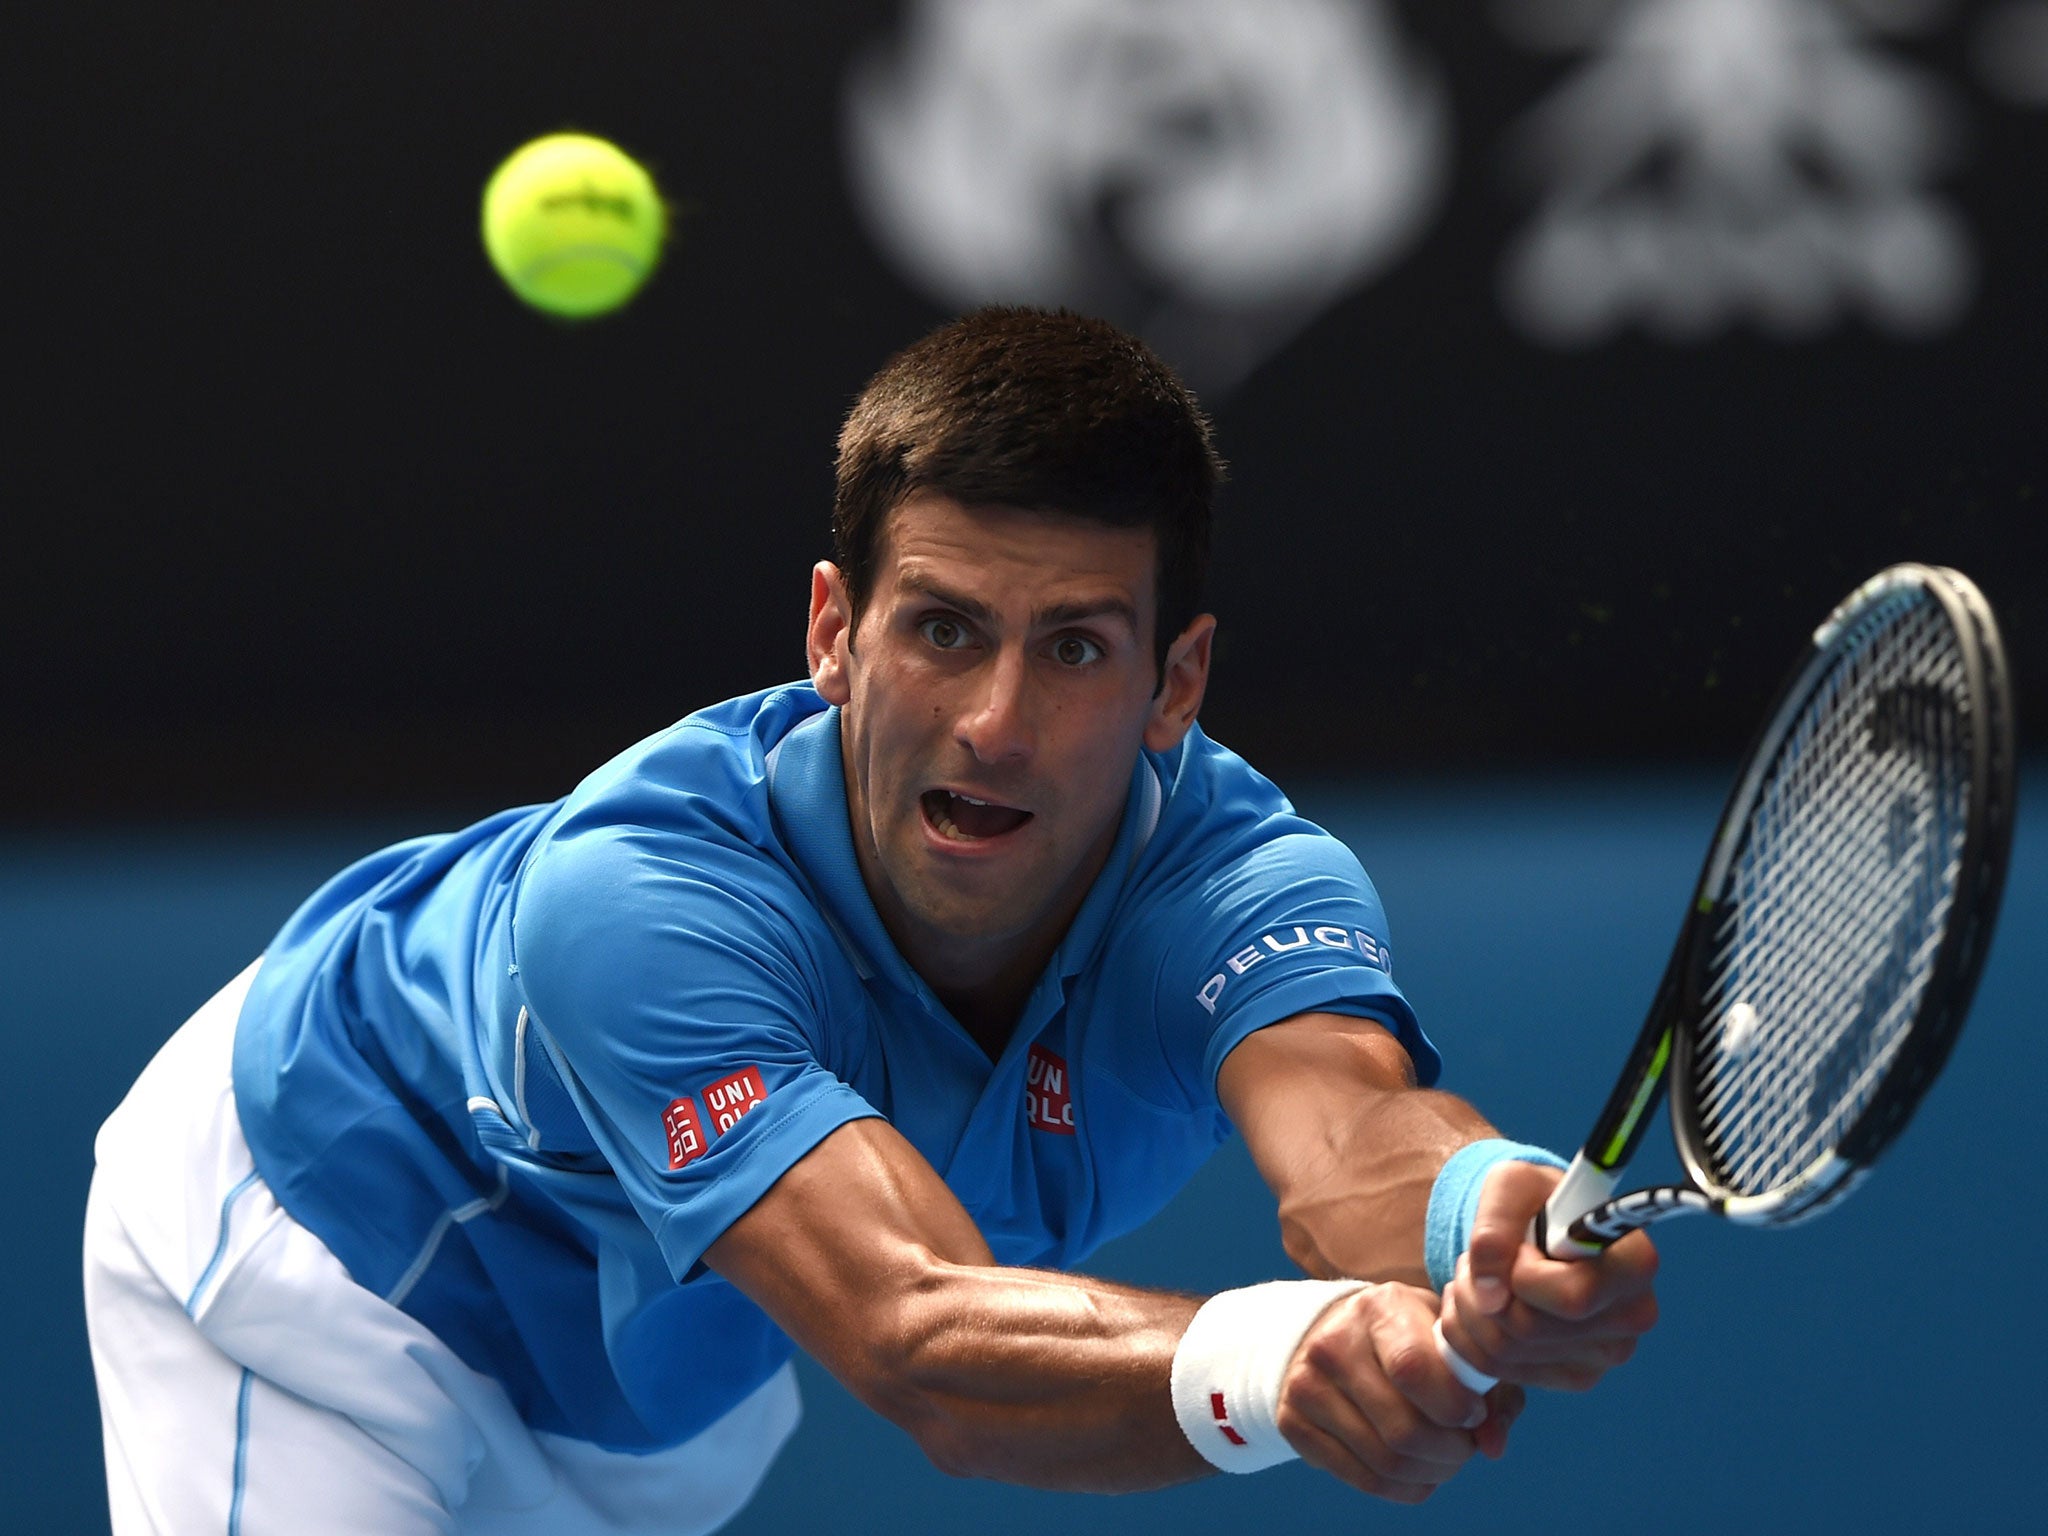 Novak Djokovic takes on Gilles Muller in the Australian Open next